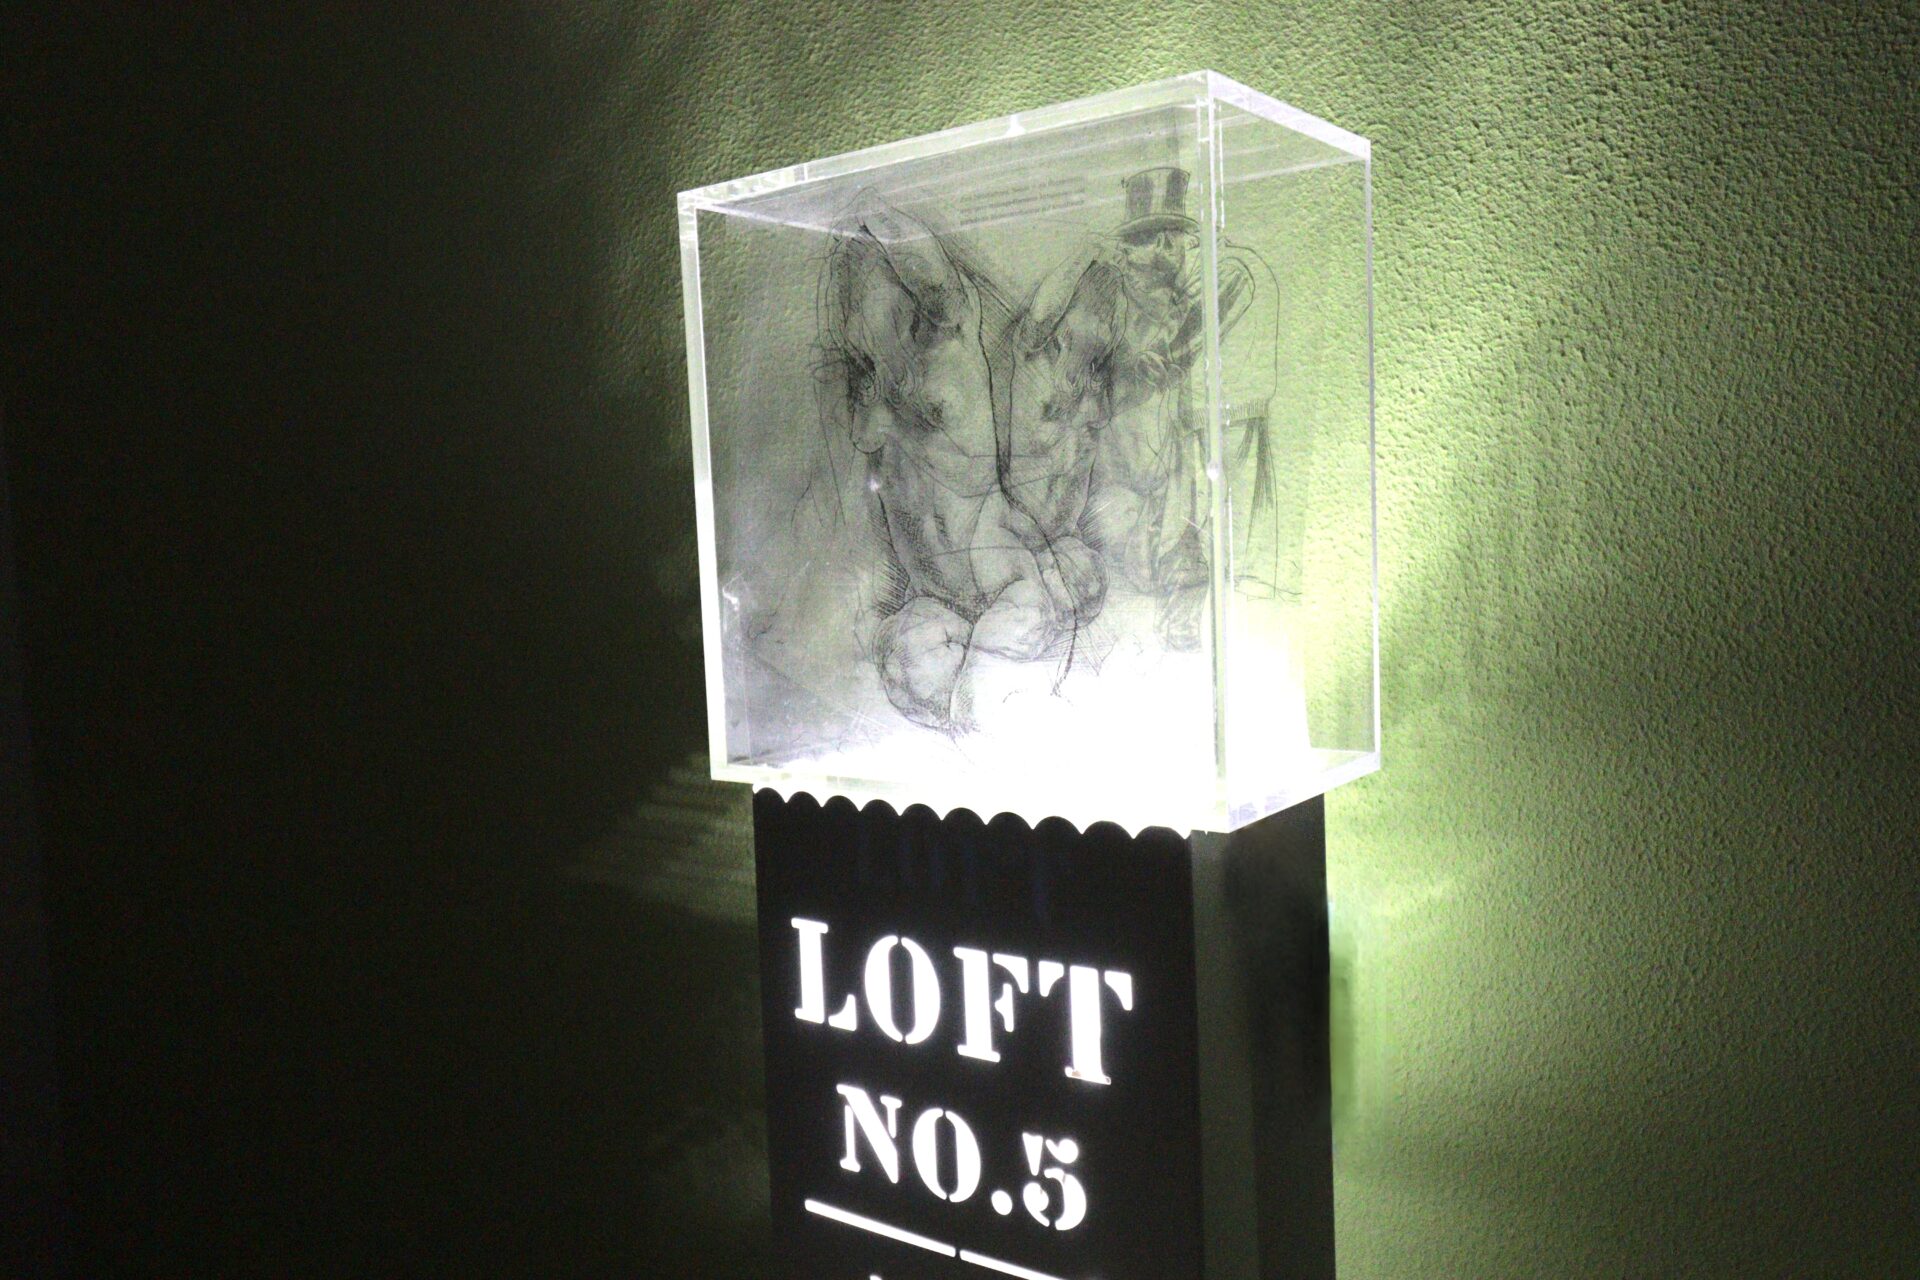 Mit KI entwickelt die Ölmalerin, Pop-Art Künstlerin und Bildhauerin Diana Achtzig ihre eigene Kunst weiter zur gemorphten Kunstform in einer beleuchteten White Box